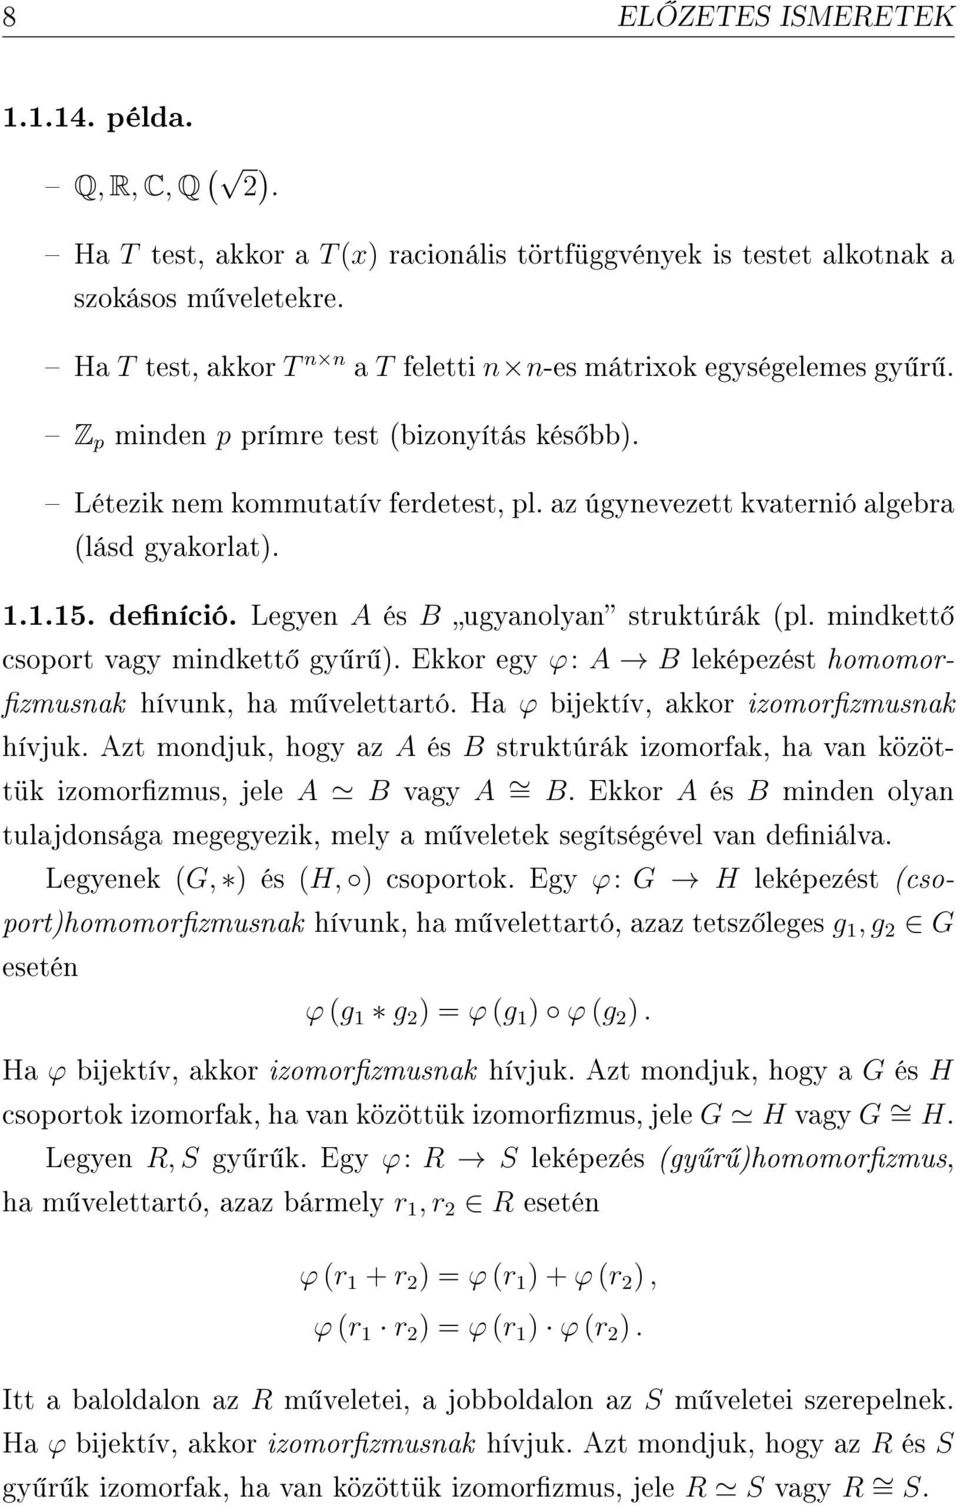 az úgynevezett kvaternió algebra (lásd gyakorlat). 1.1.15. deníció. Legyen A és B ugyanolyan struktúrák (pl. mindkett csoport vagy mindkett gy r ).